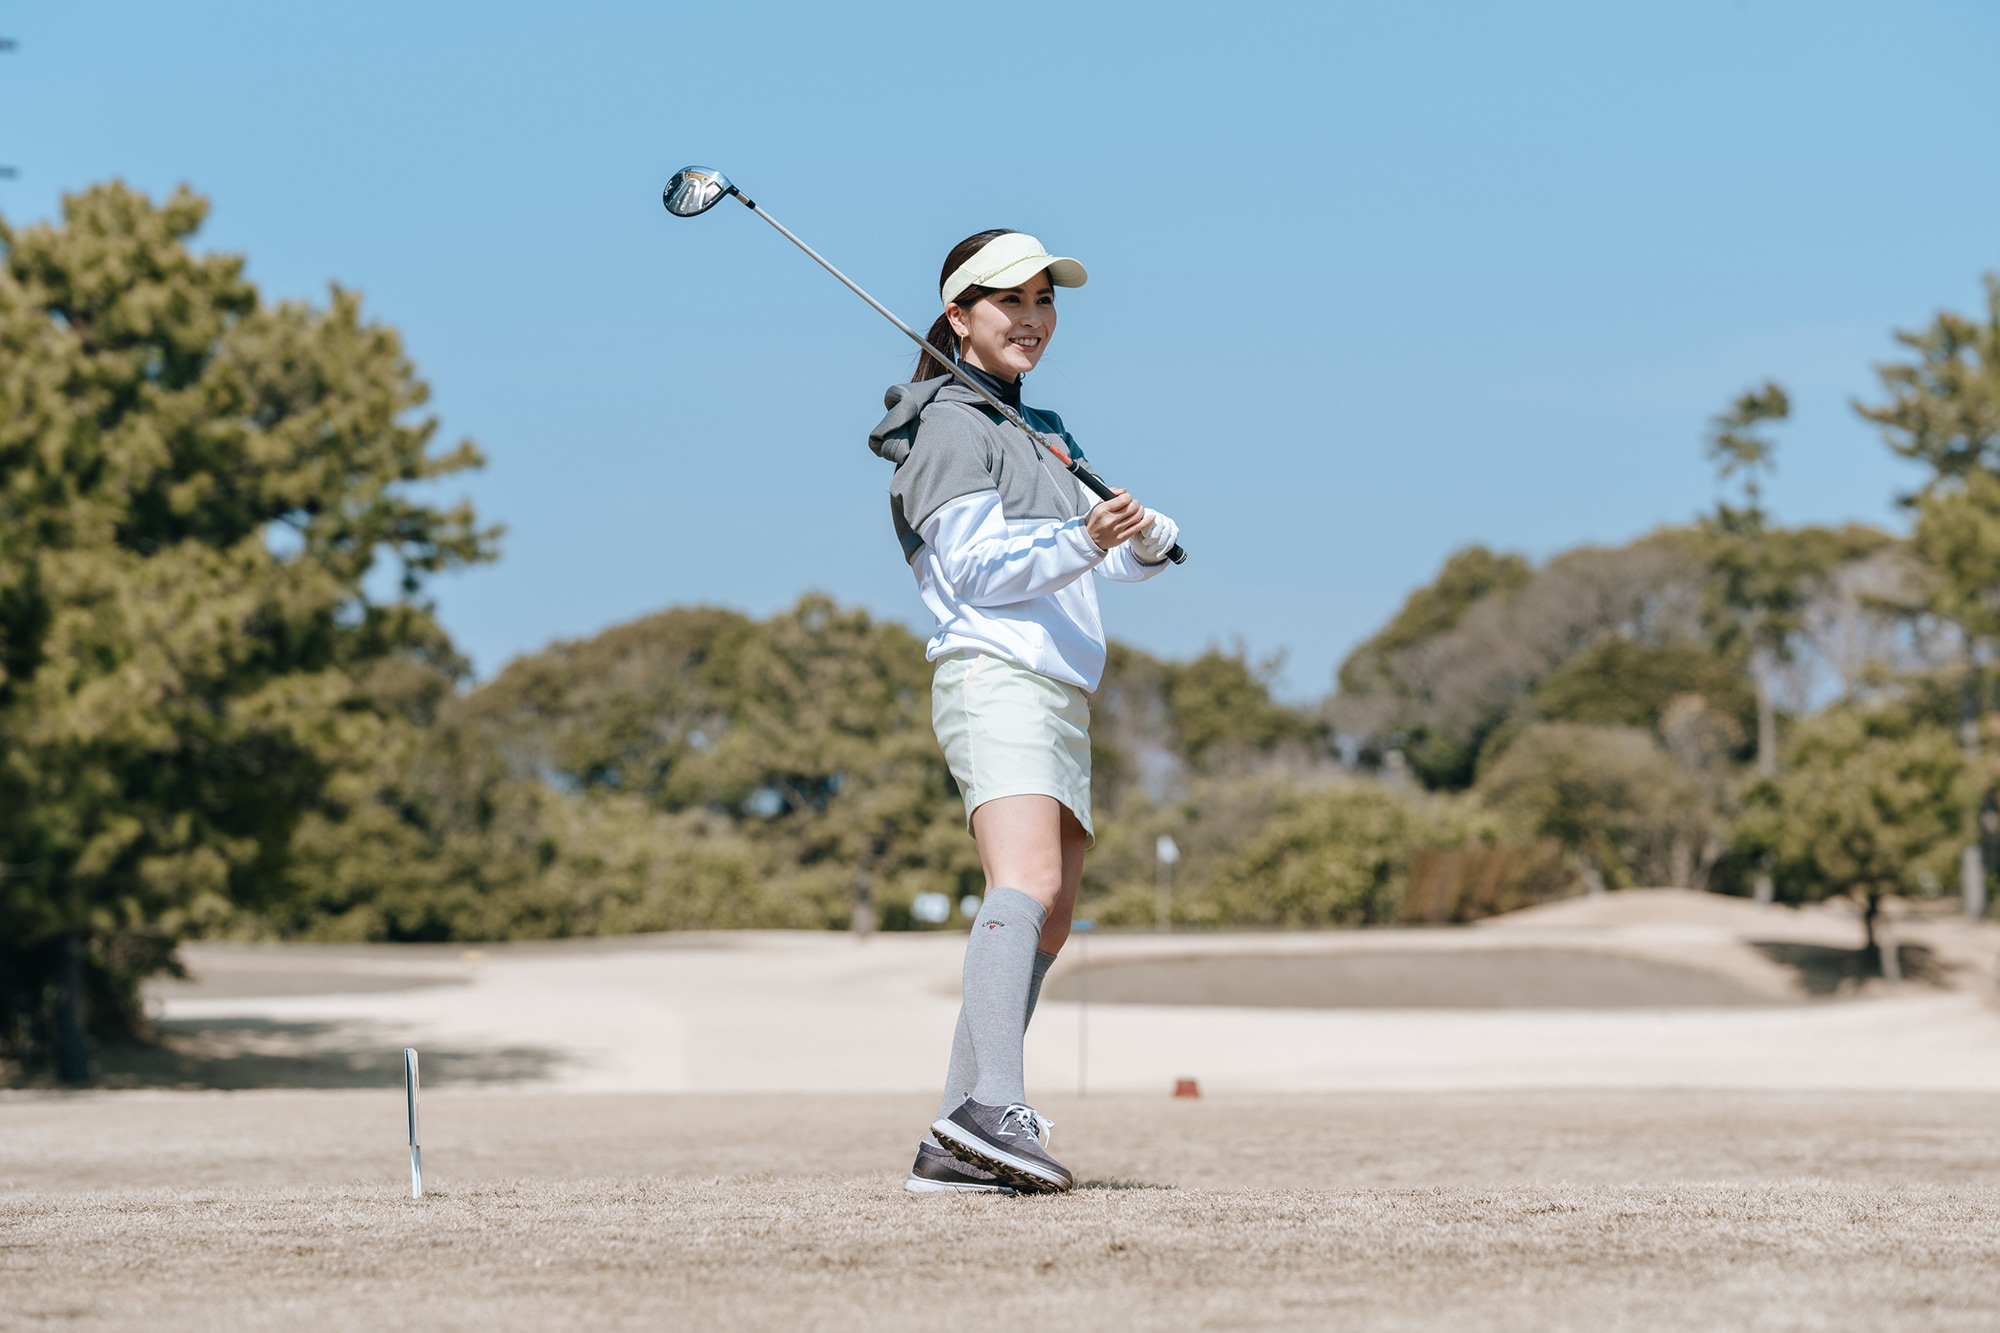 アガるキャロウェイガールズ・町野聡美さん。 “ROGUE ST MAX FAST シリーズ”は、幅広い女性ゴルファーを楽しくさせるクラブです♪  キャロウェイゴルフ公式サイト